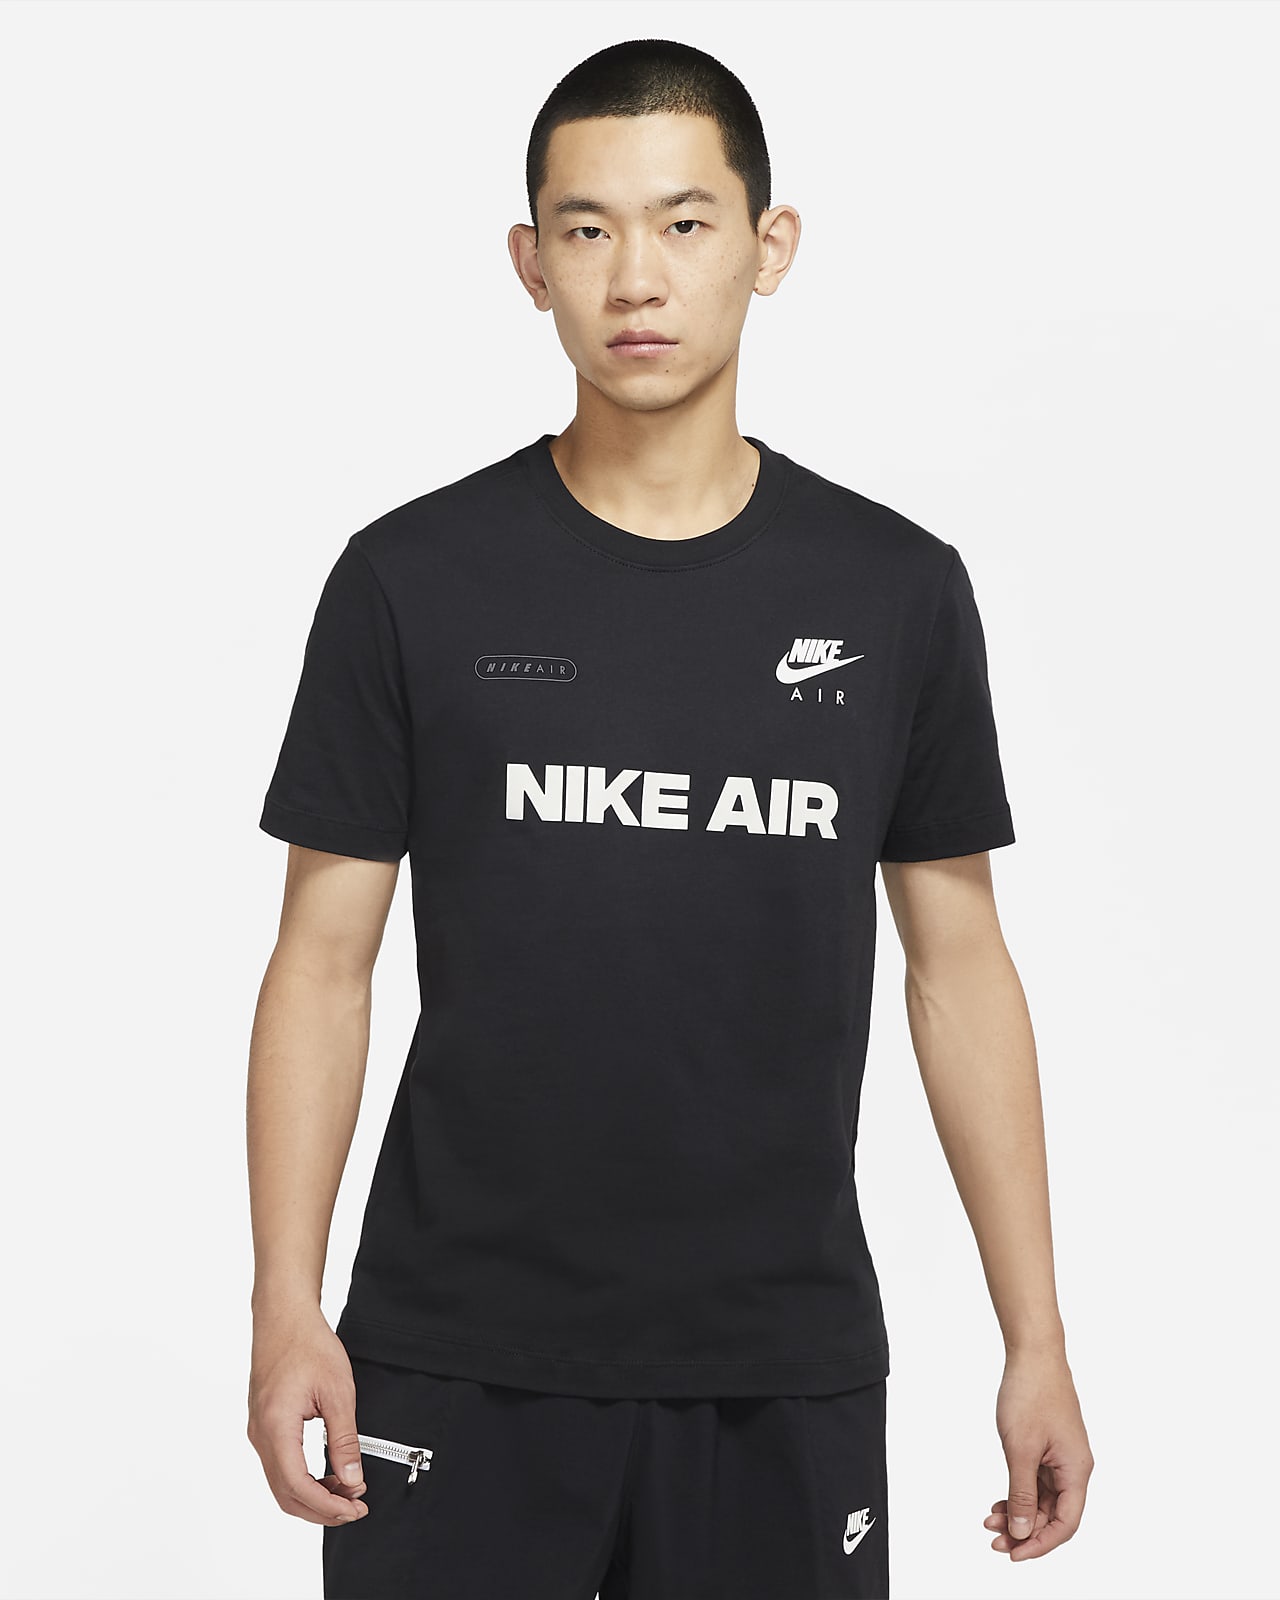 Air Men's T-Shirt. Nike